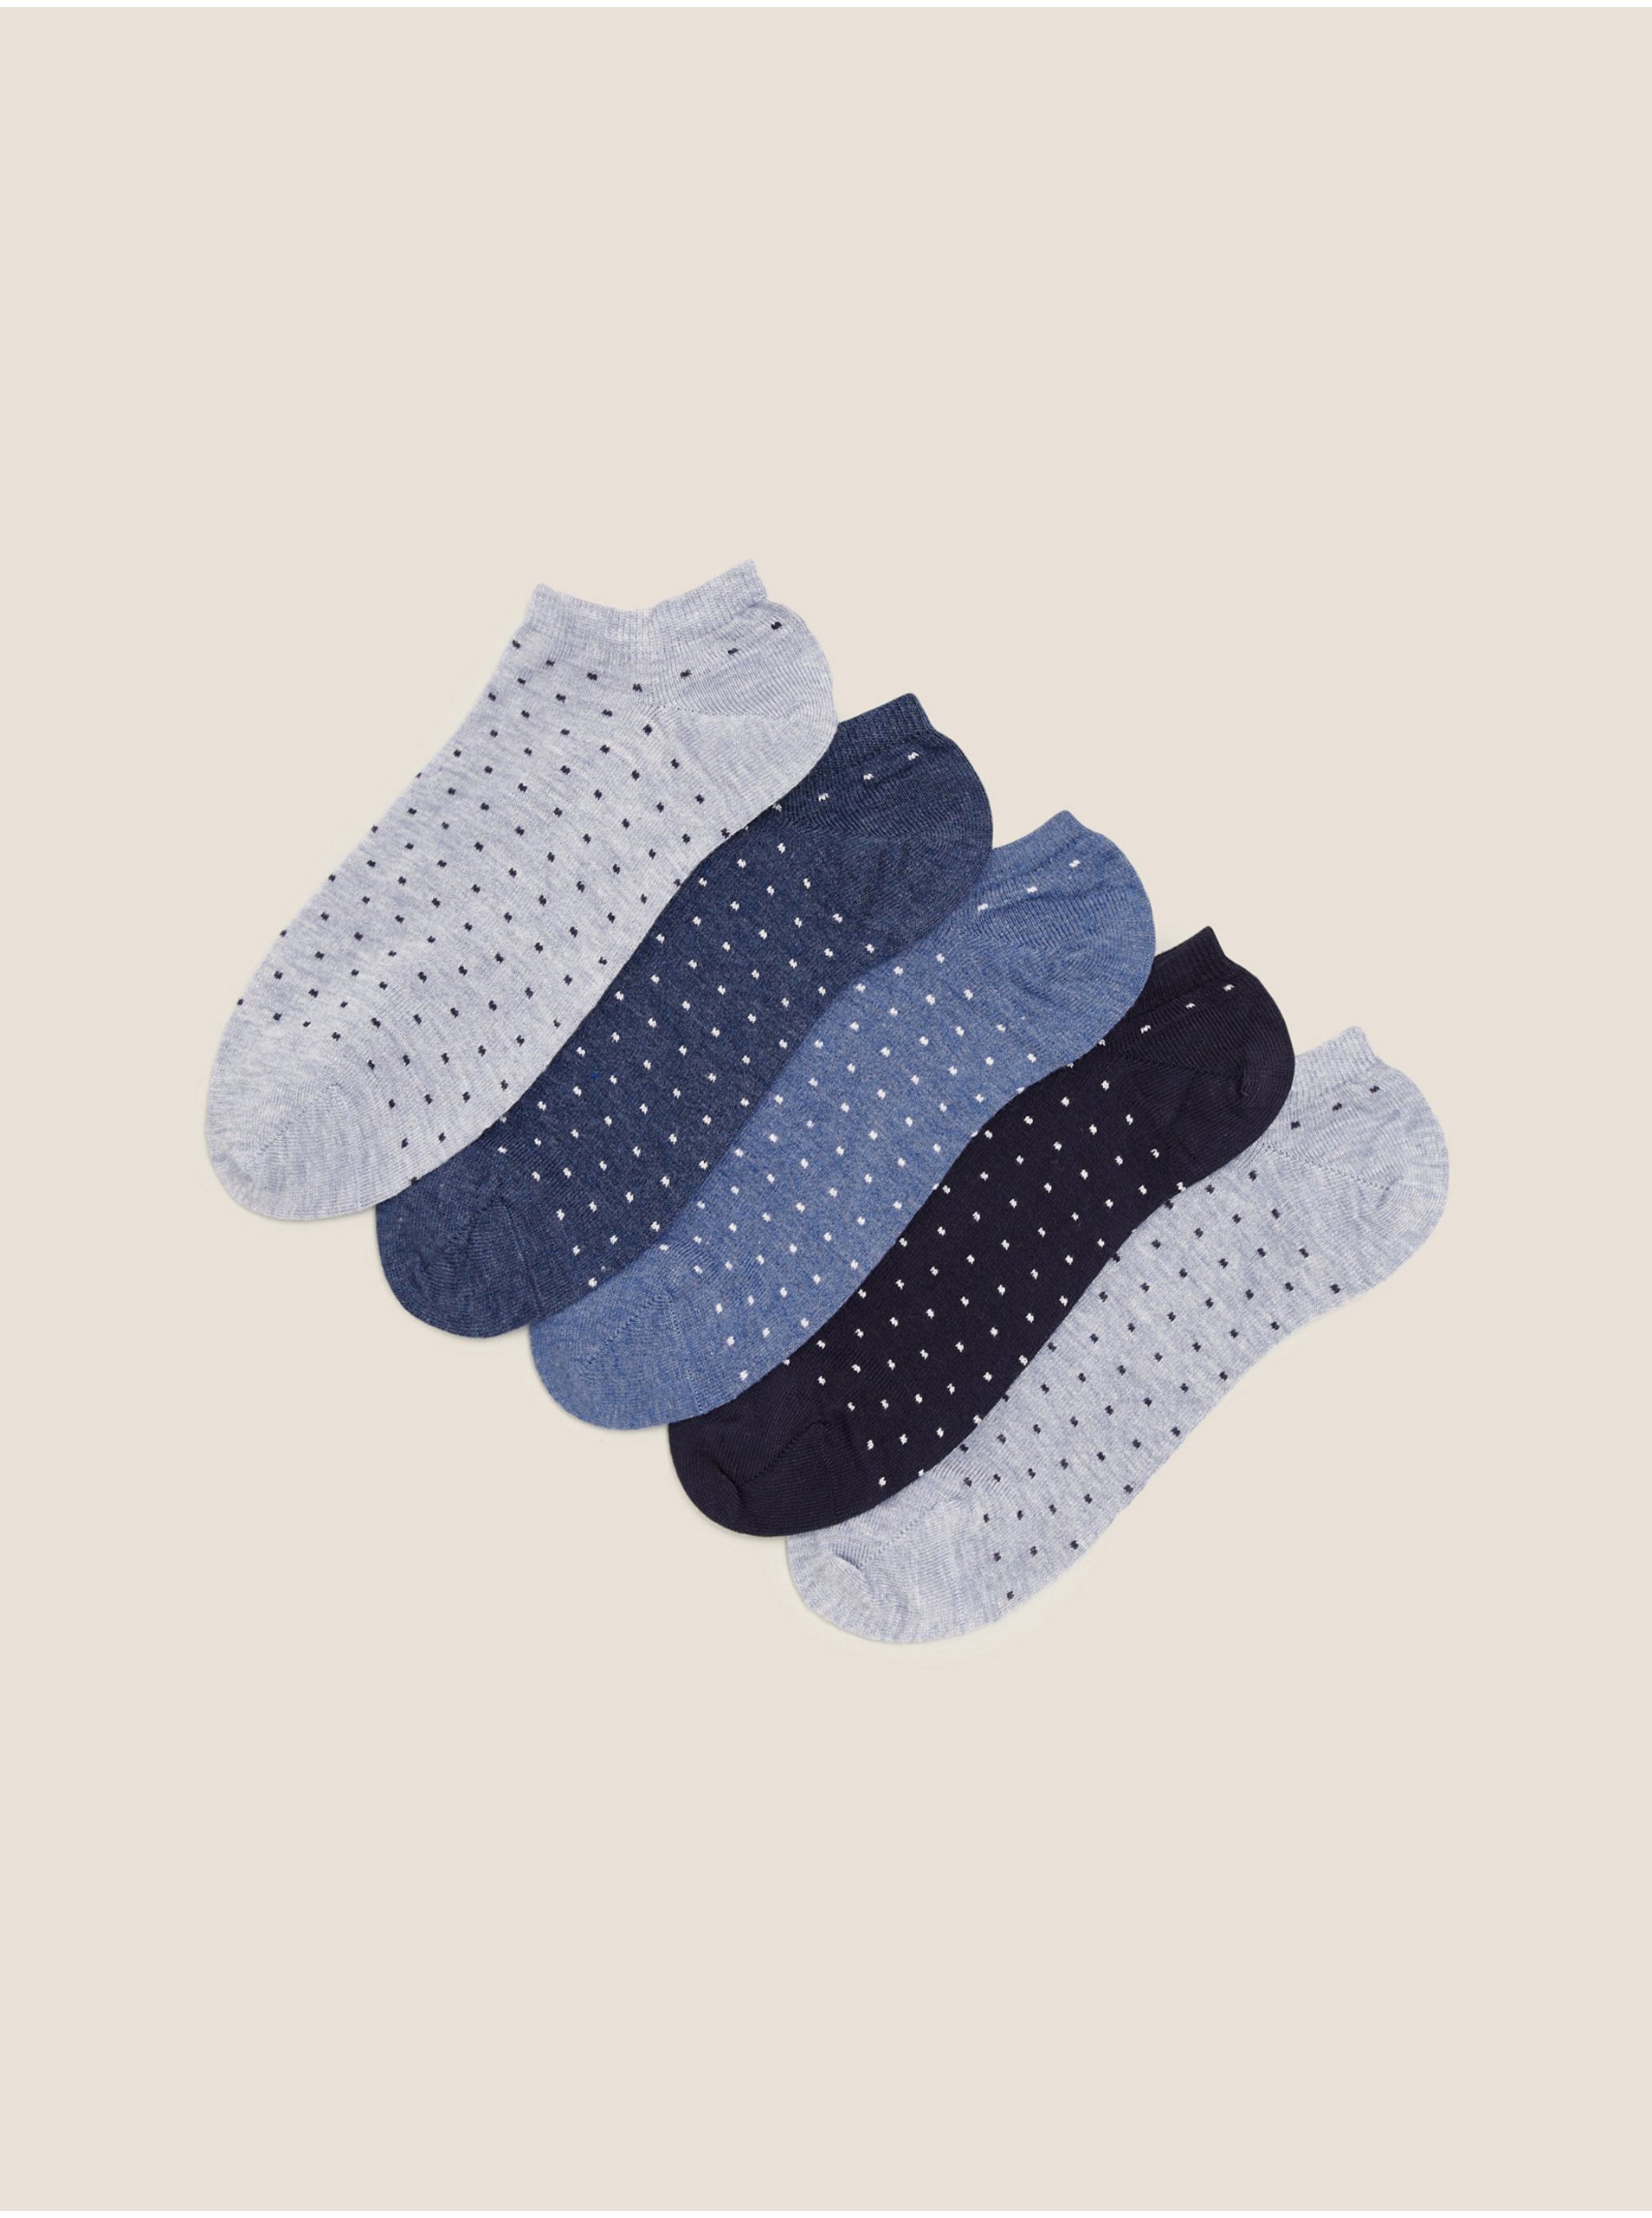 Levně Sada pěti párů dámských puntíkovaných ponožek v modré, šedé a černé barvě Marks & Spencer Sumptuously Soft™